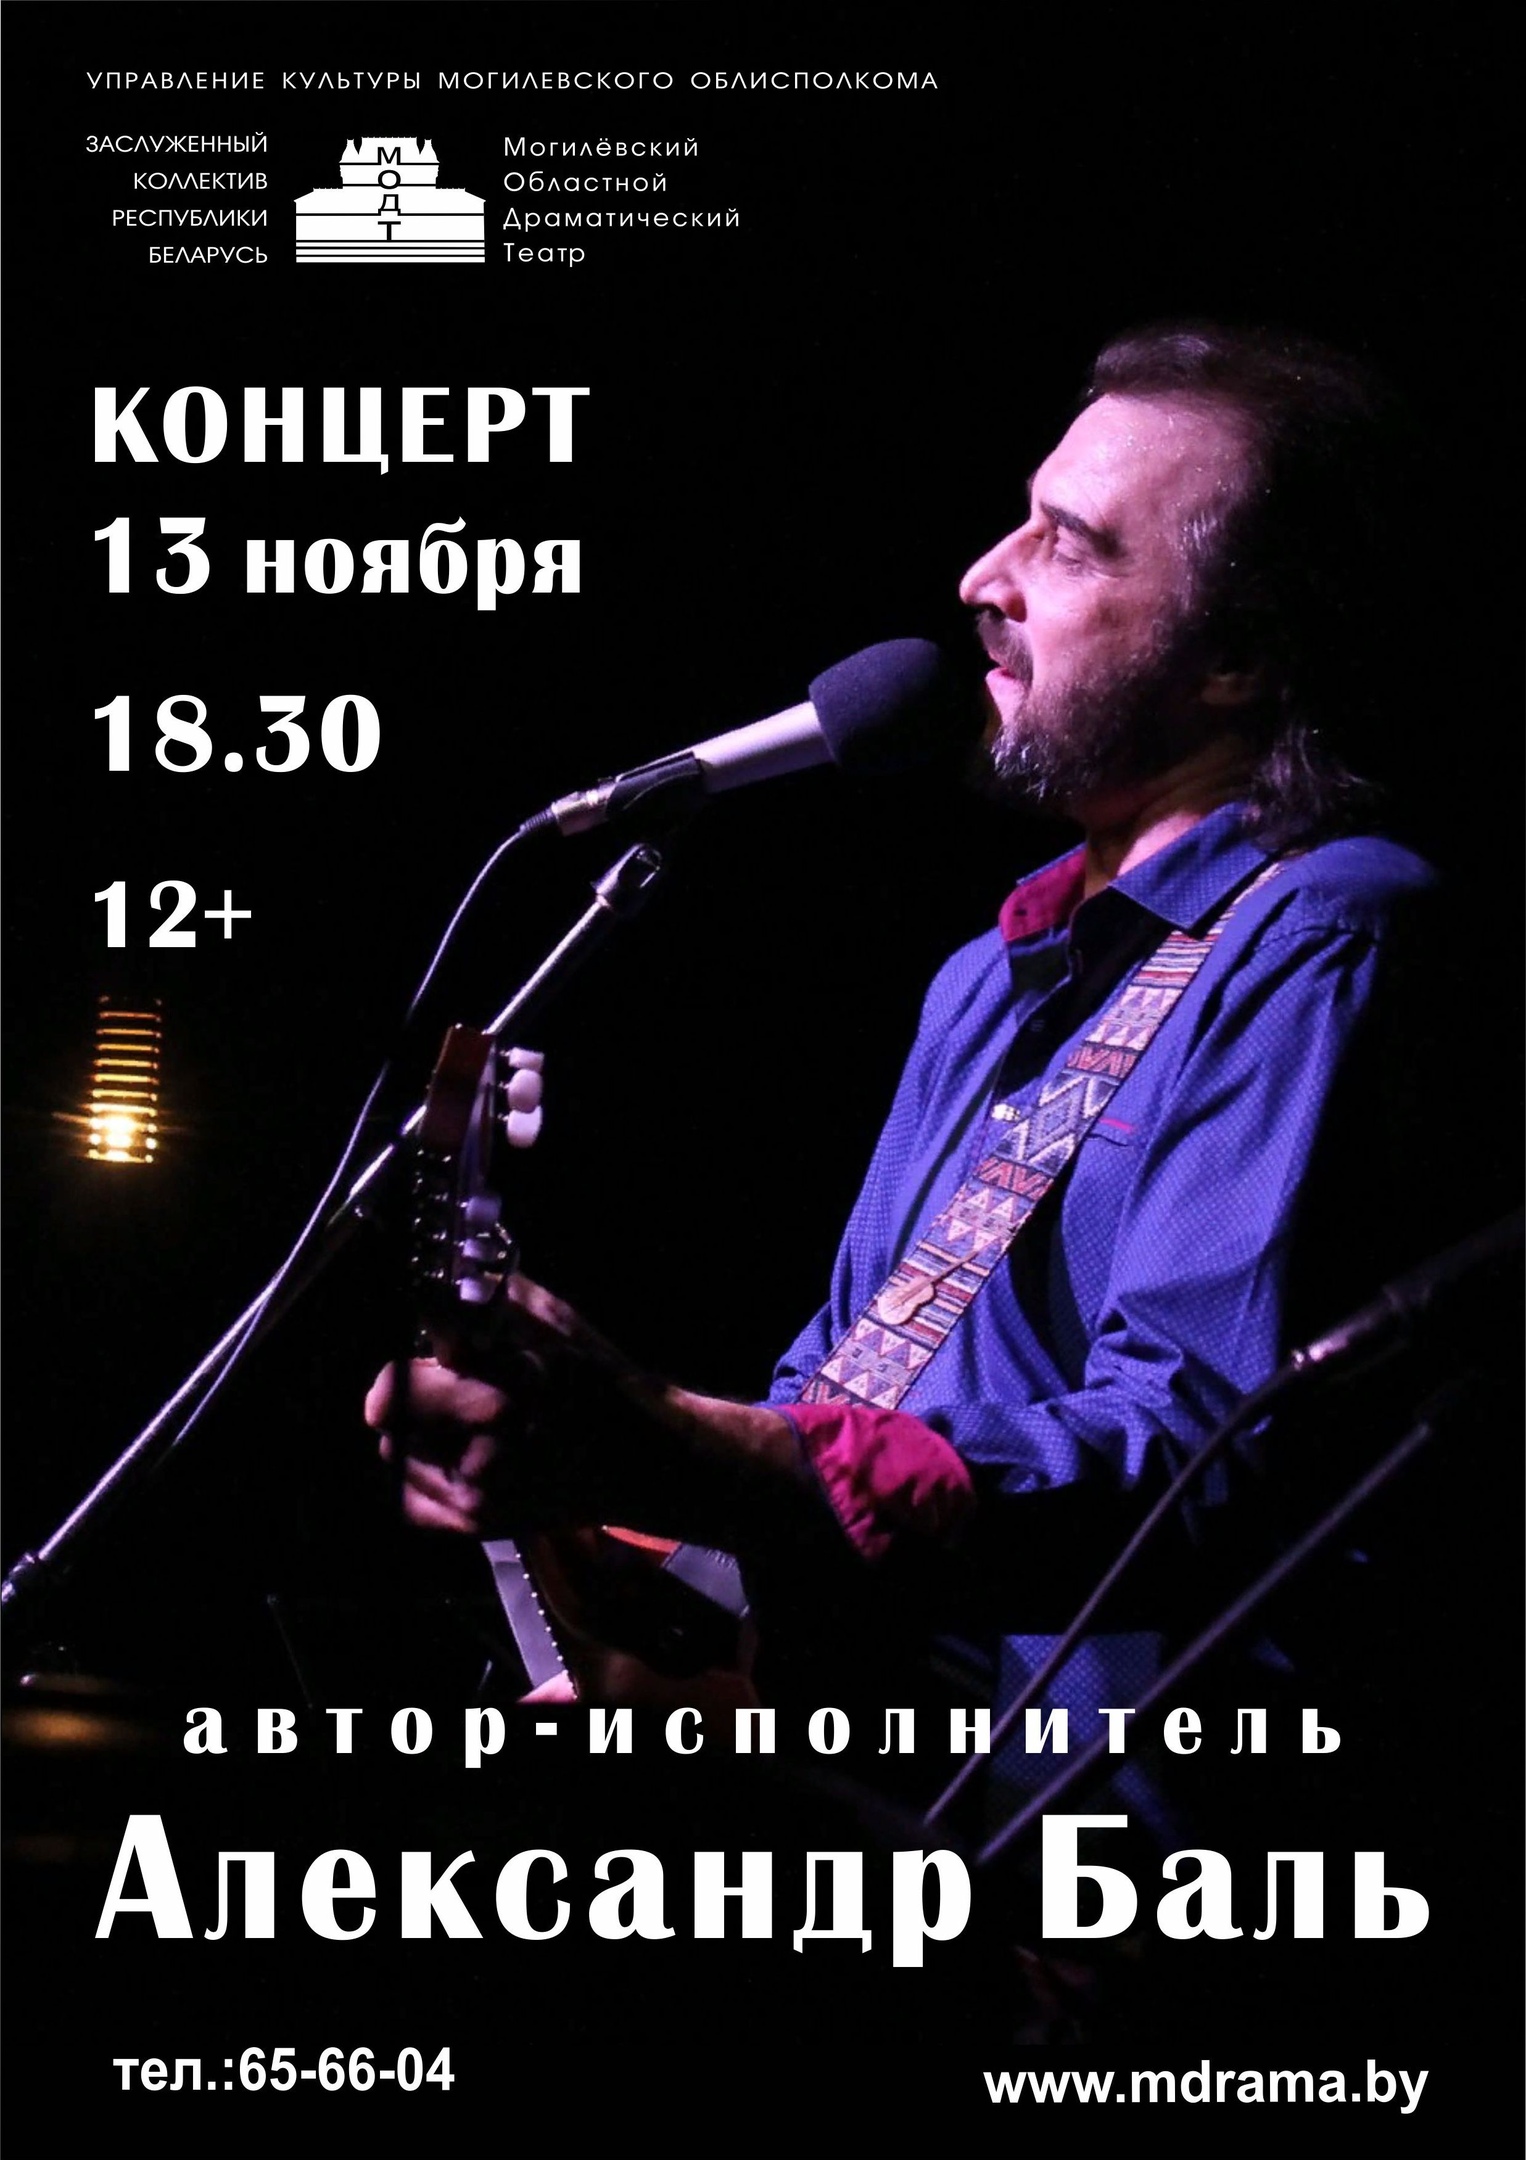 Автор-исполнитель Александр Баль выступит с сольным концертом в Могилеве 13 ноября